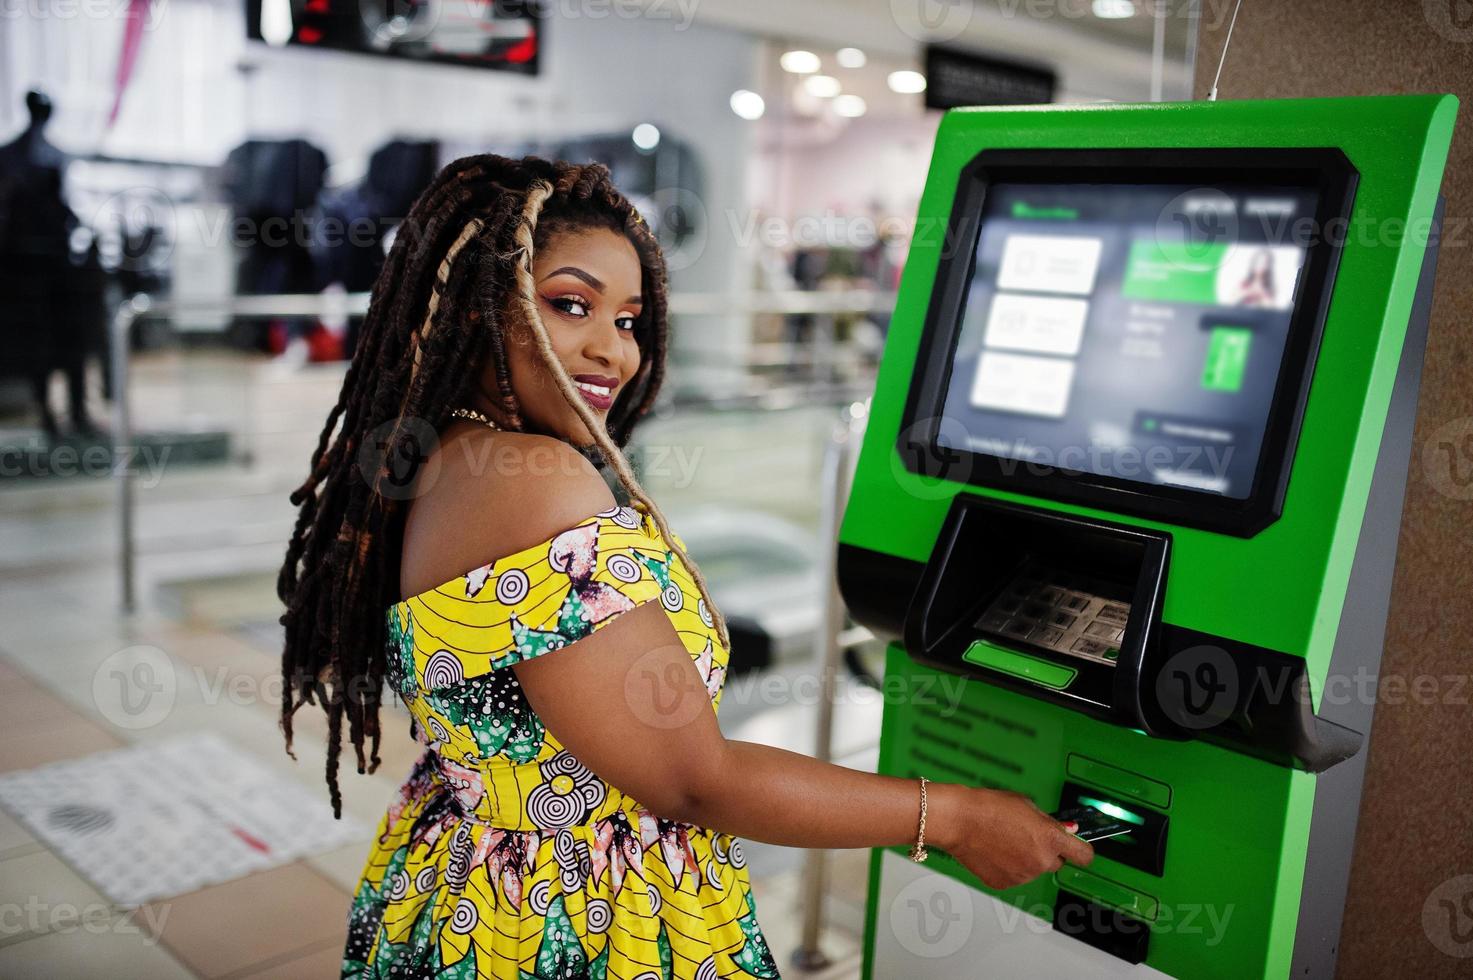 carina ragazza afroamericana di piccola altezza con i dreadlocks, indossa un vestito giallo colorato, contro bancomat con carta di credito a portata di mano. foto